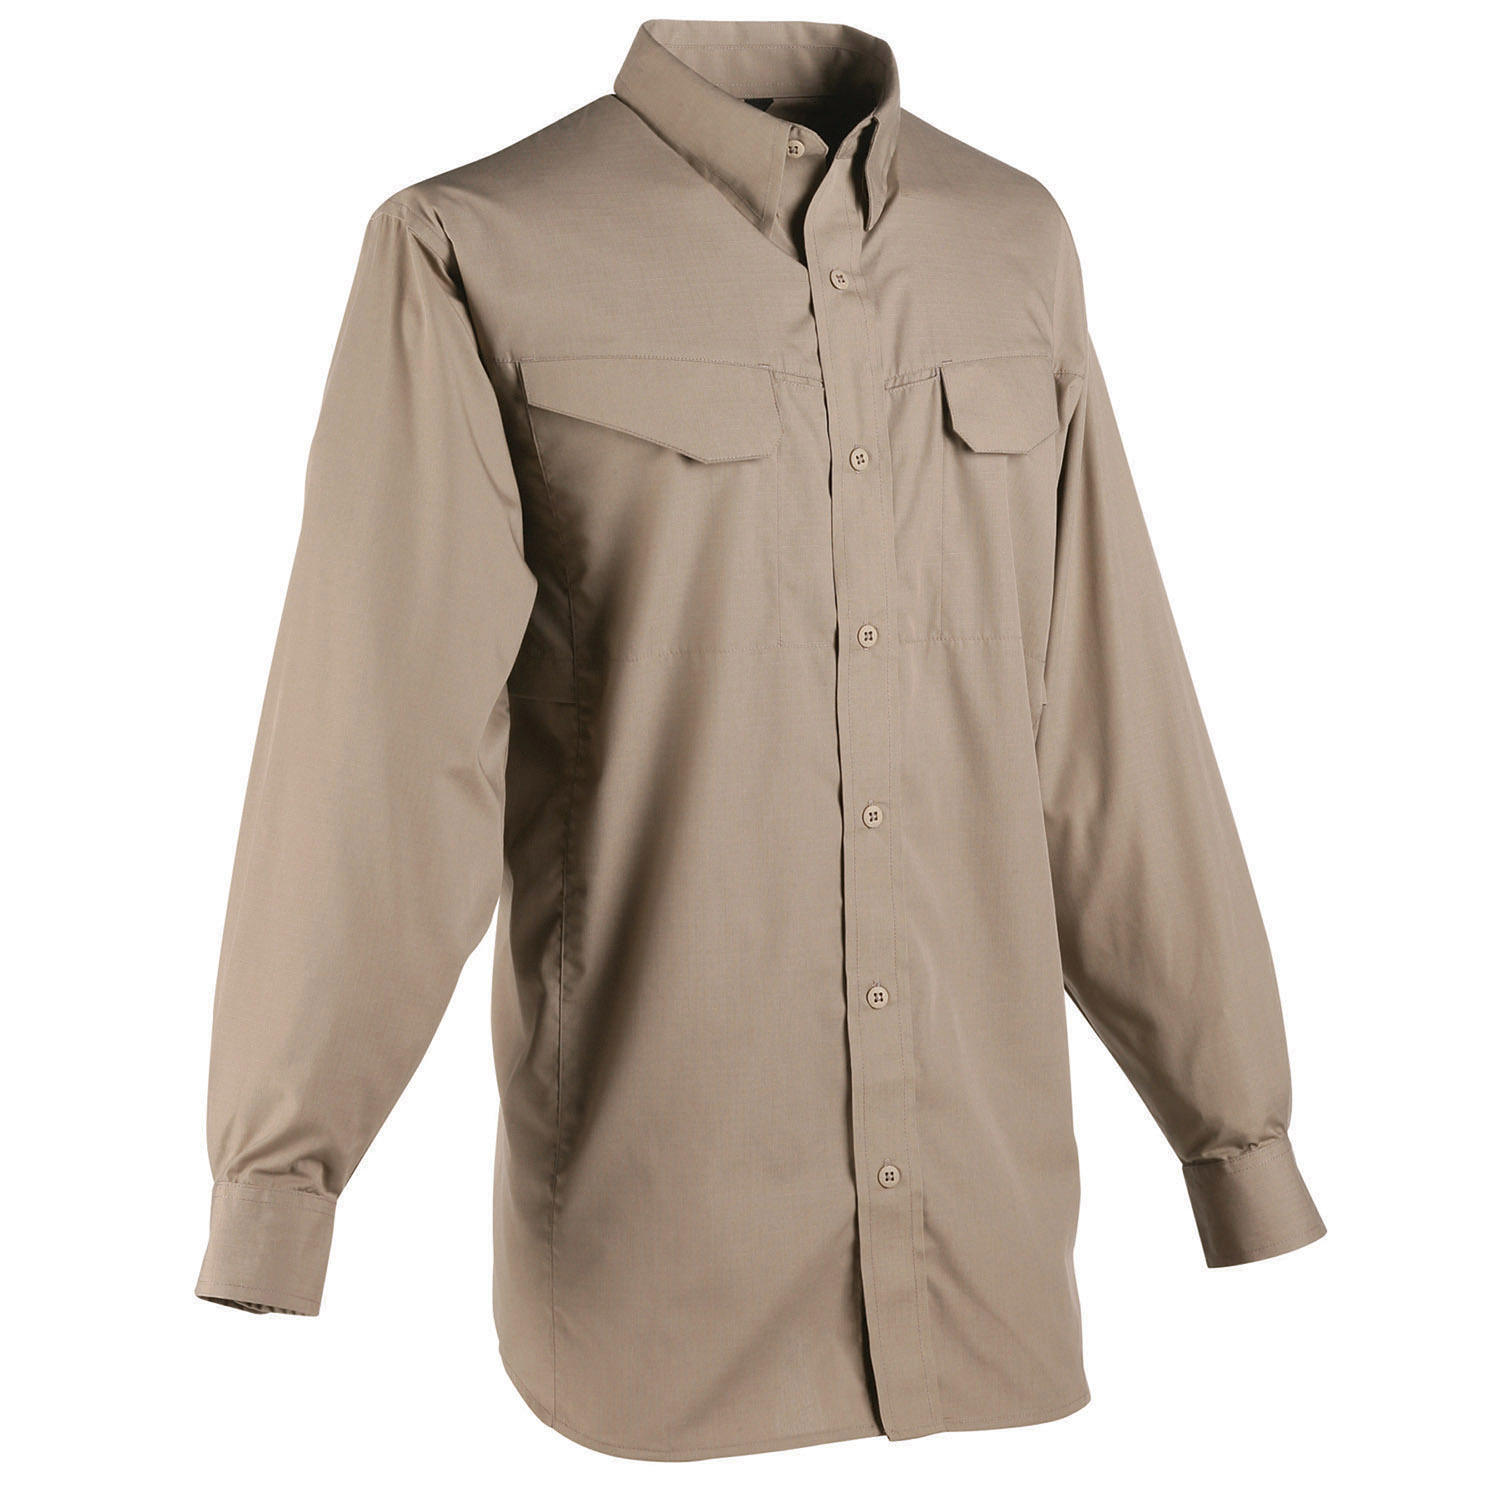 Tru-Spec 24-7 Series Lightweight Poly Cotton Ripstop Shirt